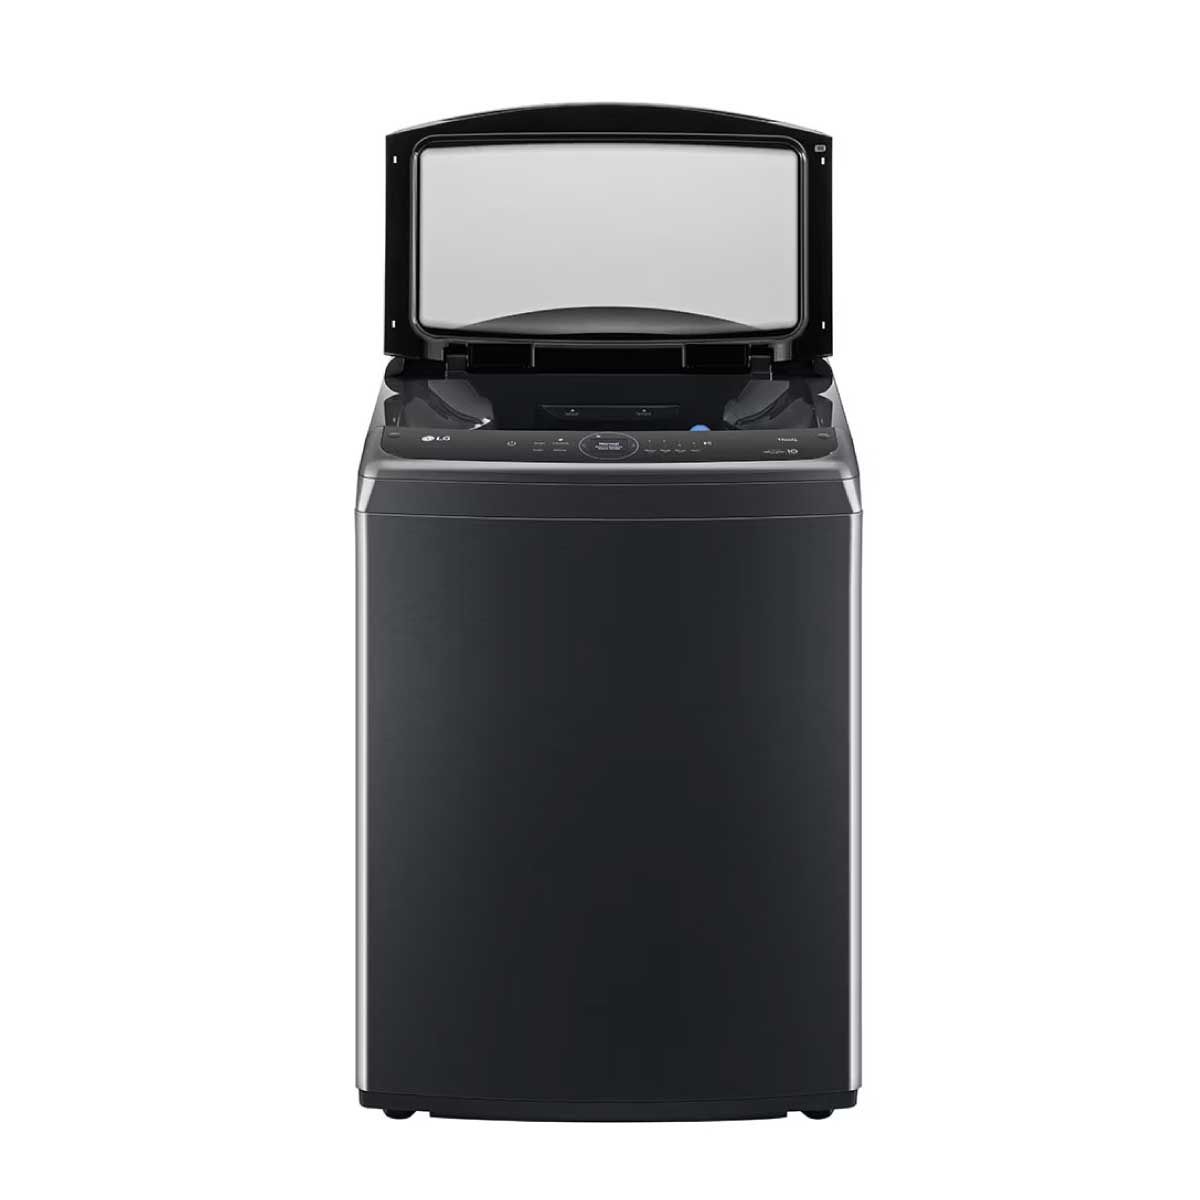 LG เครื่องซักผ้าฝาบน 24Kg WIFI สีดำ รุ่น TV2724SV9B